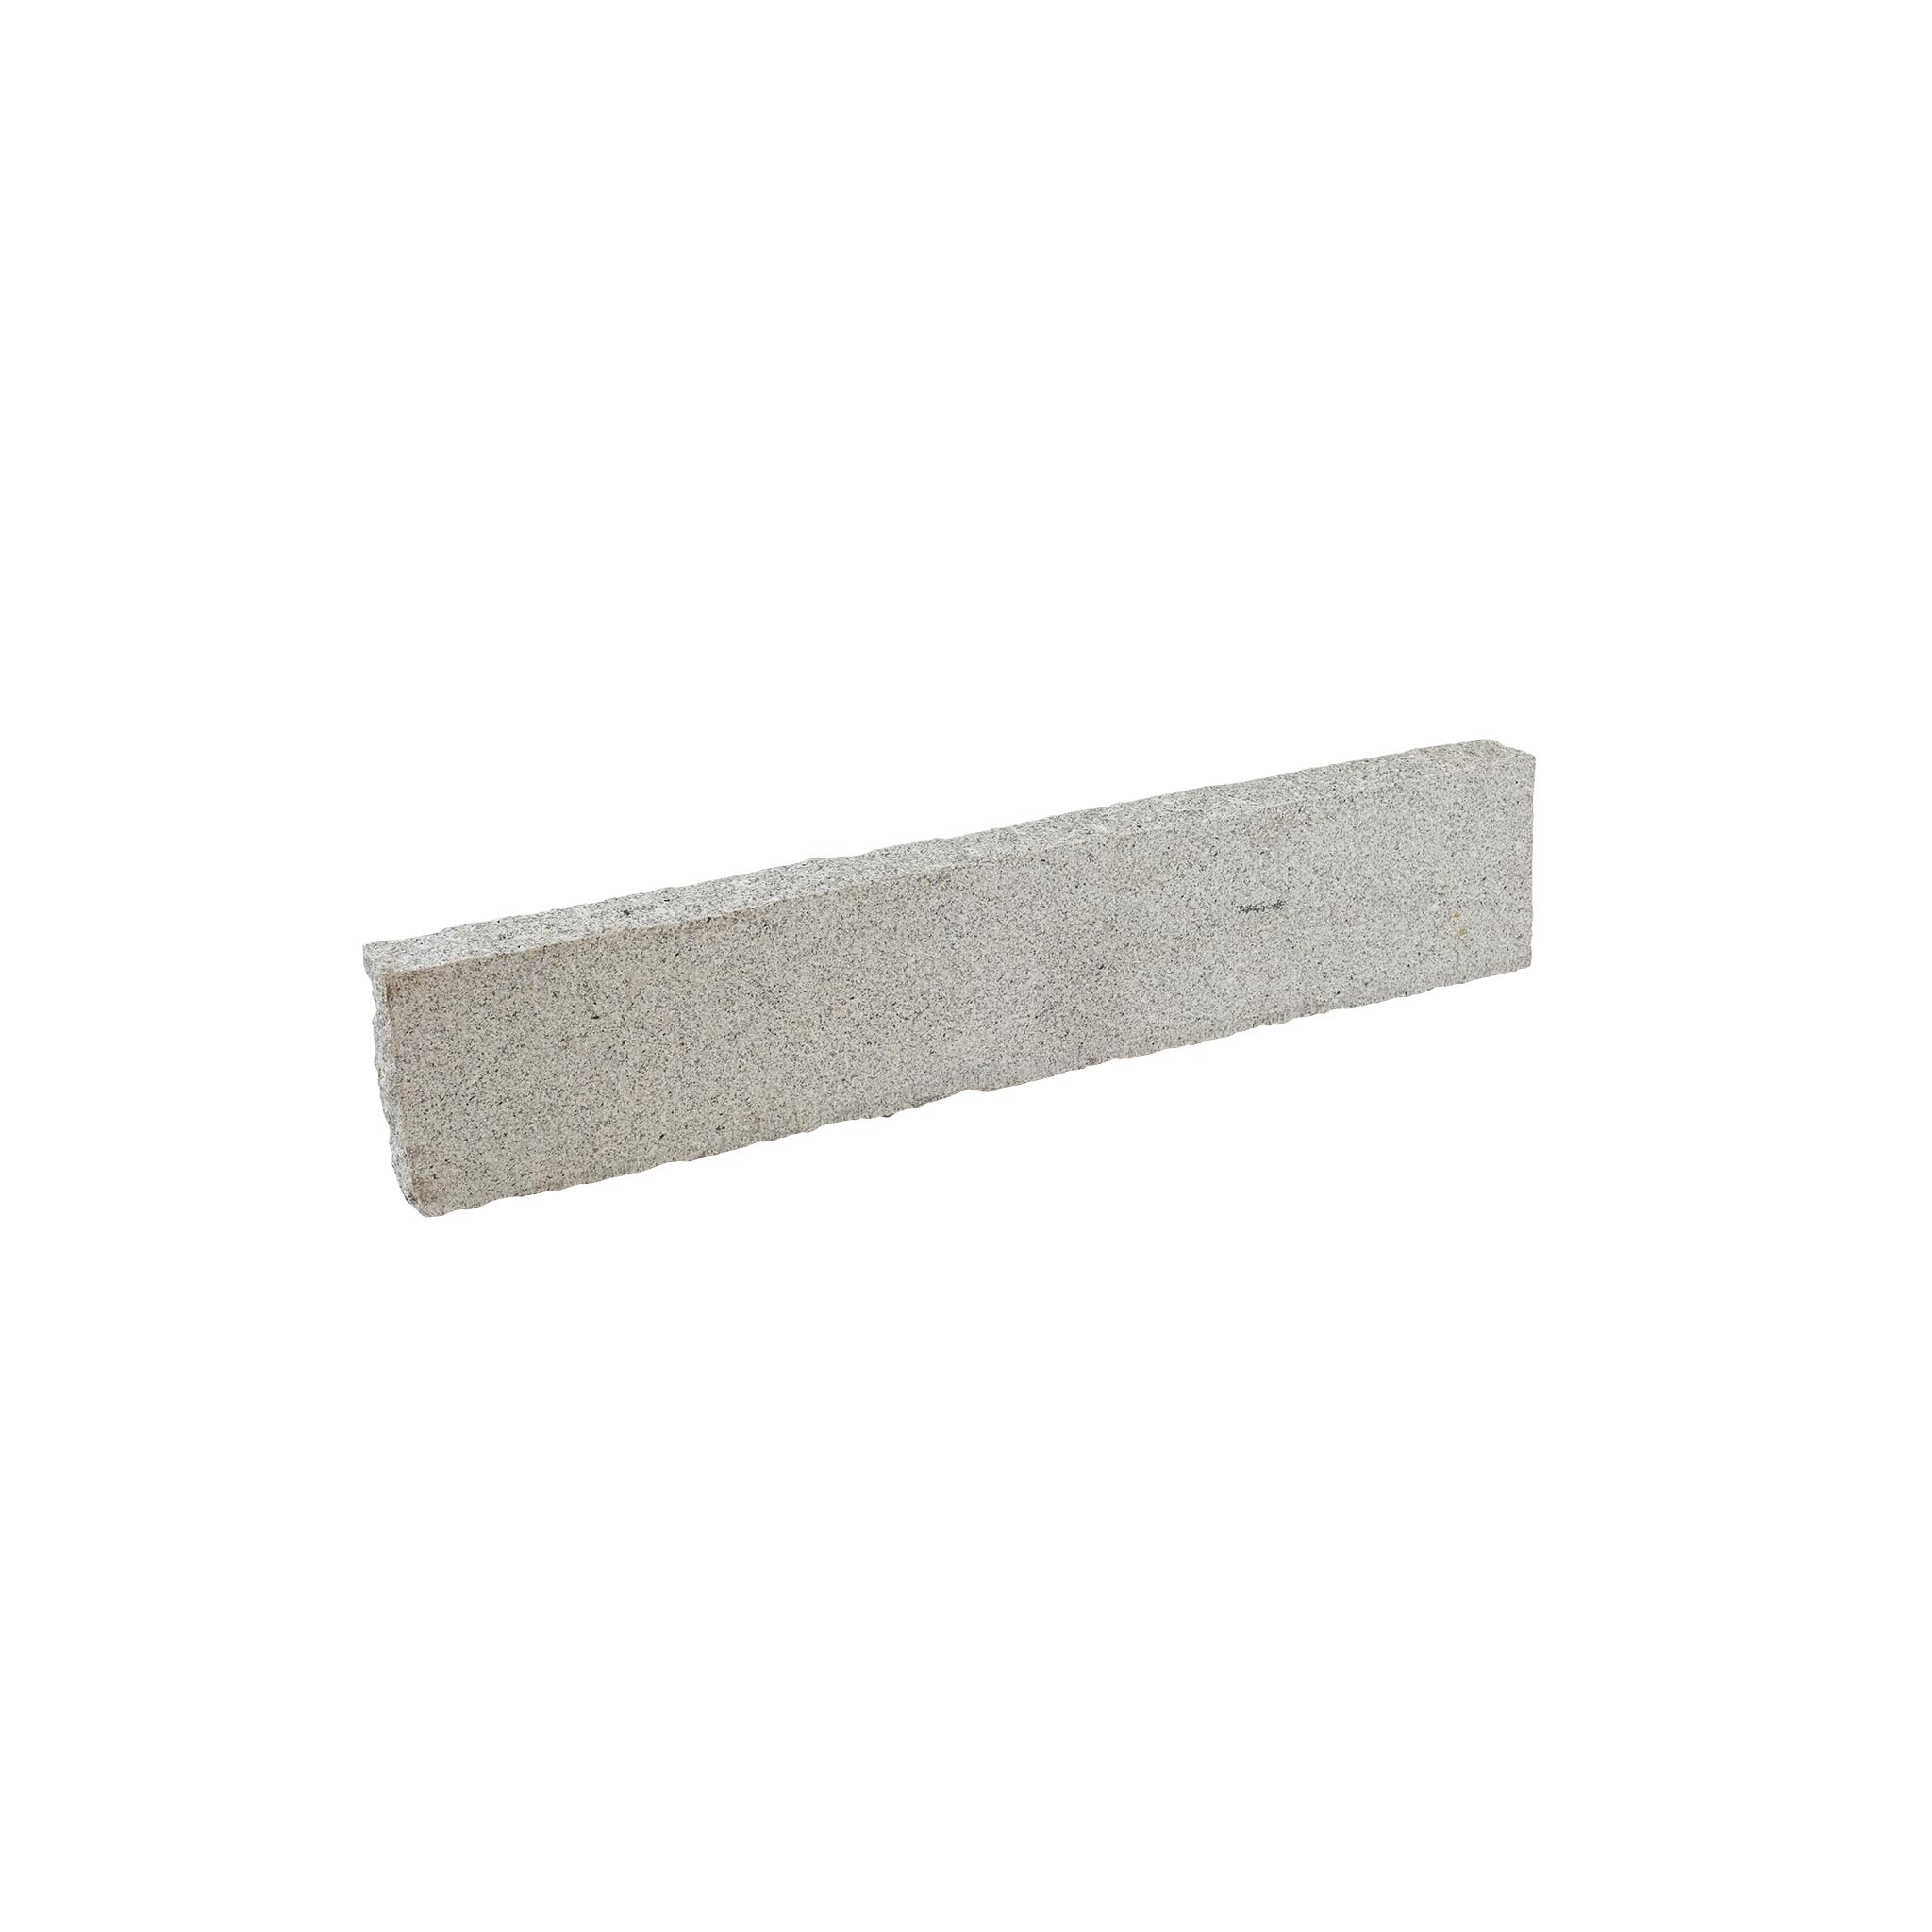 Granit grau (Pina) Premium zweiseitig gesägt & gestockt